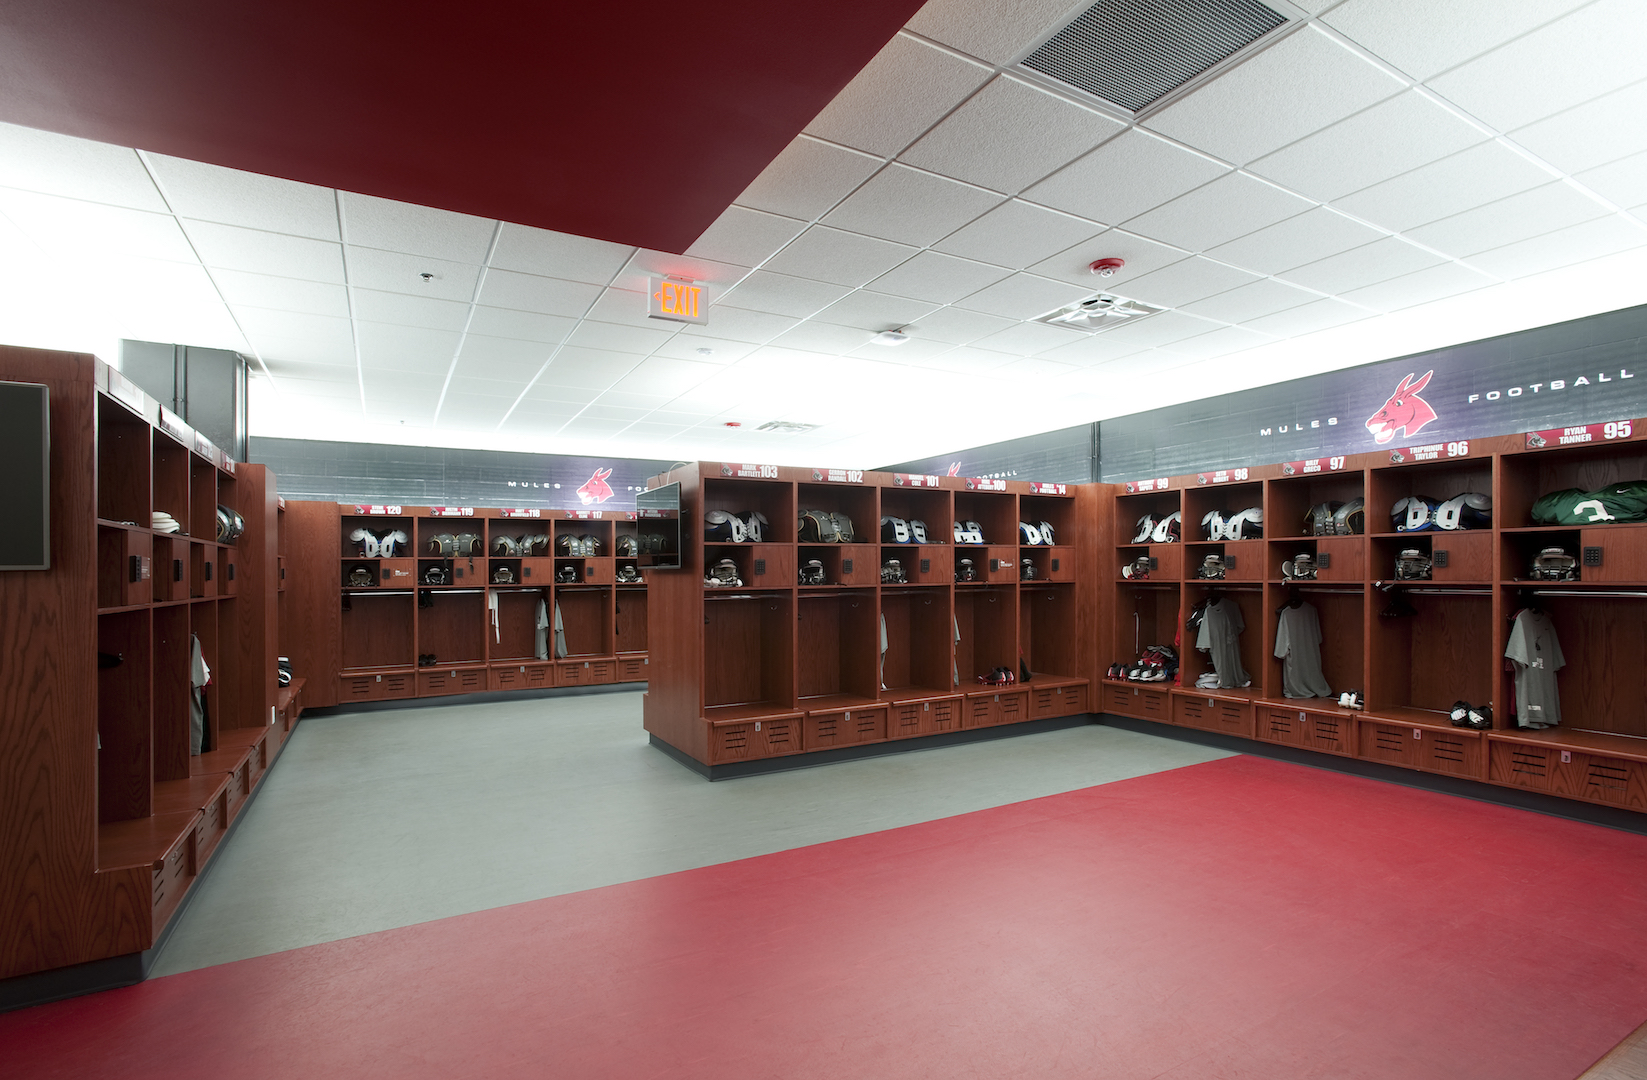 University of Central Missouri football locker room